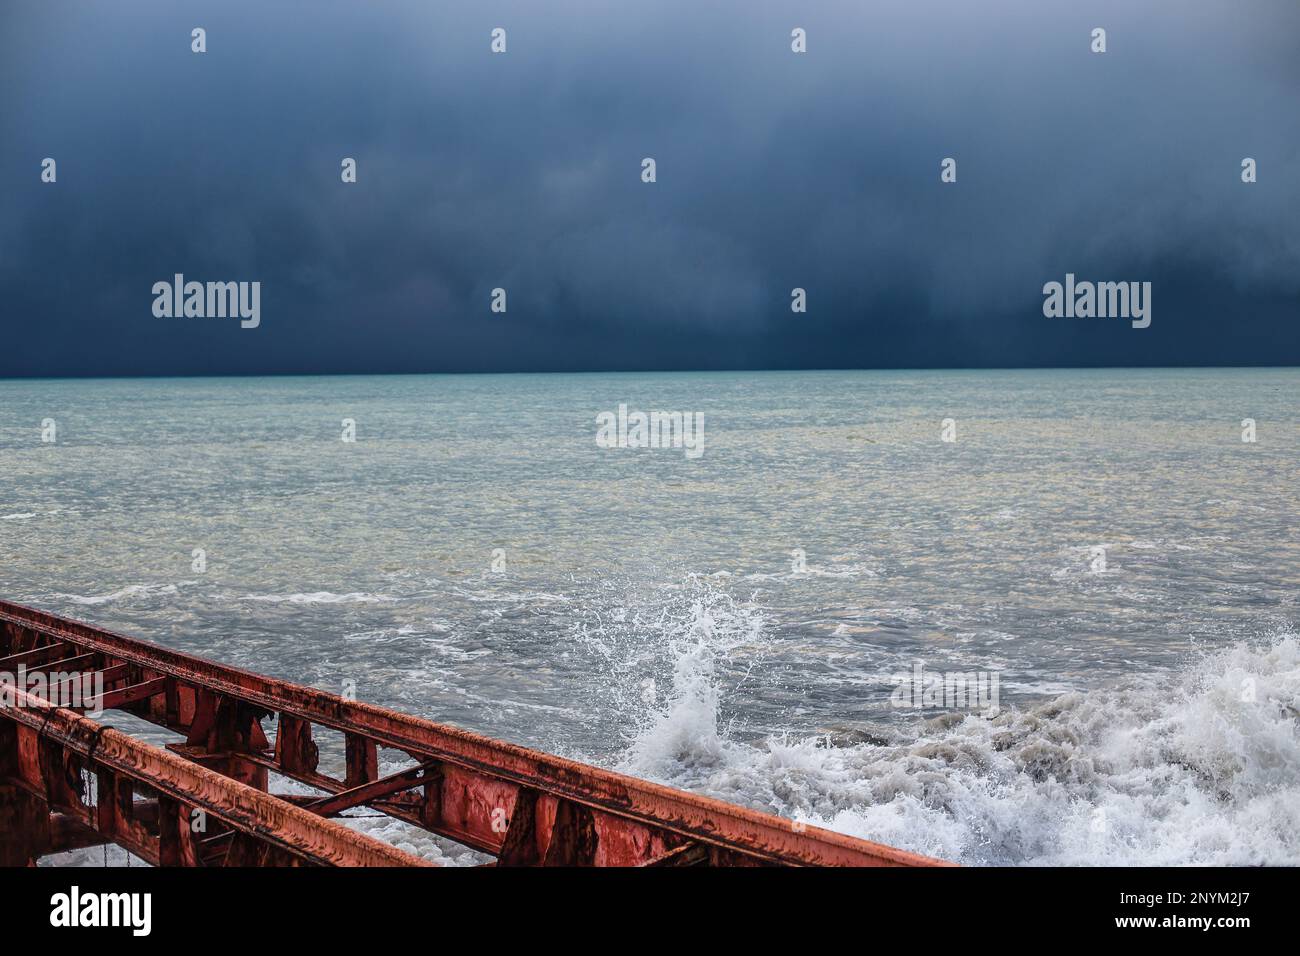 Alter roter Pier und stimmungsvolles stürmisches Meer mit einer satten blauen Farbe von Wasser und Wolken. Minimalistische Sturmlandschaft Stockfoto